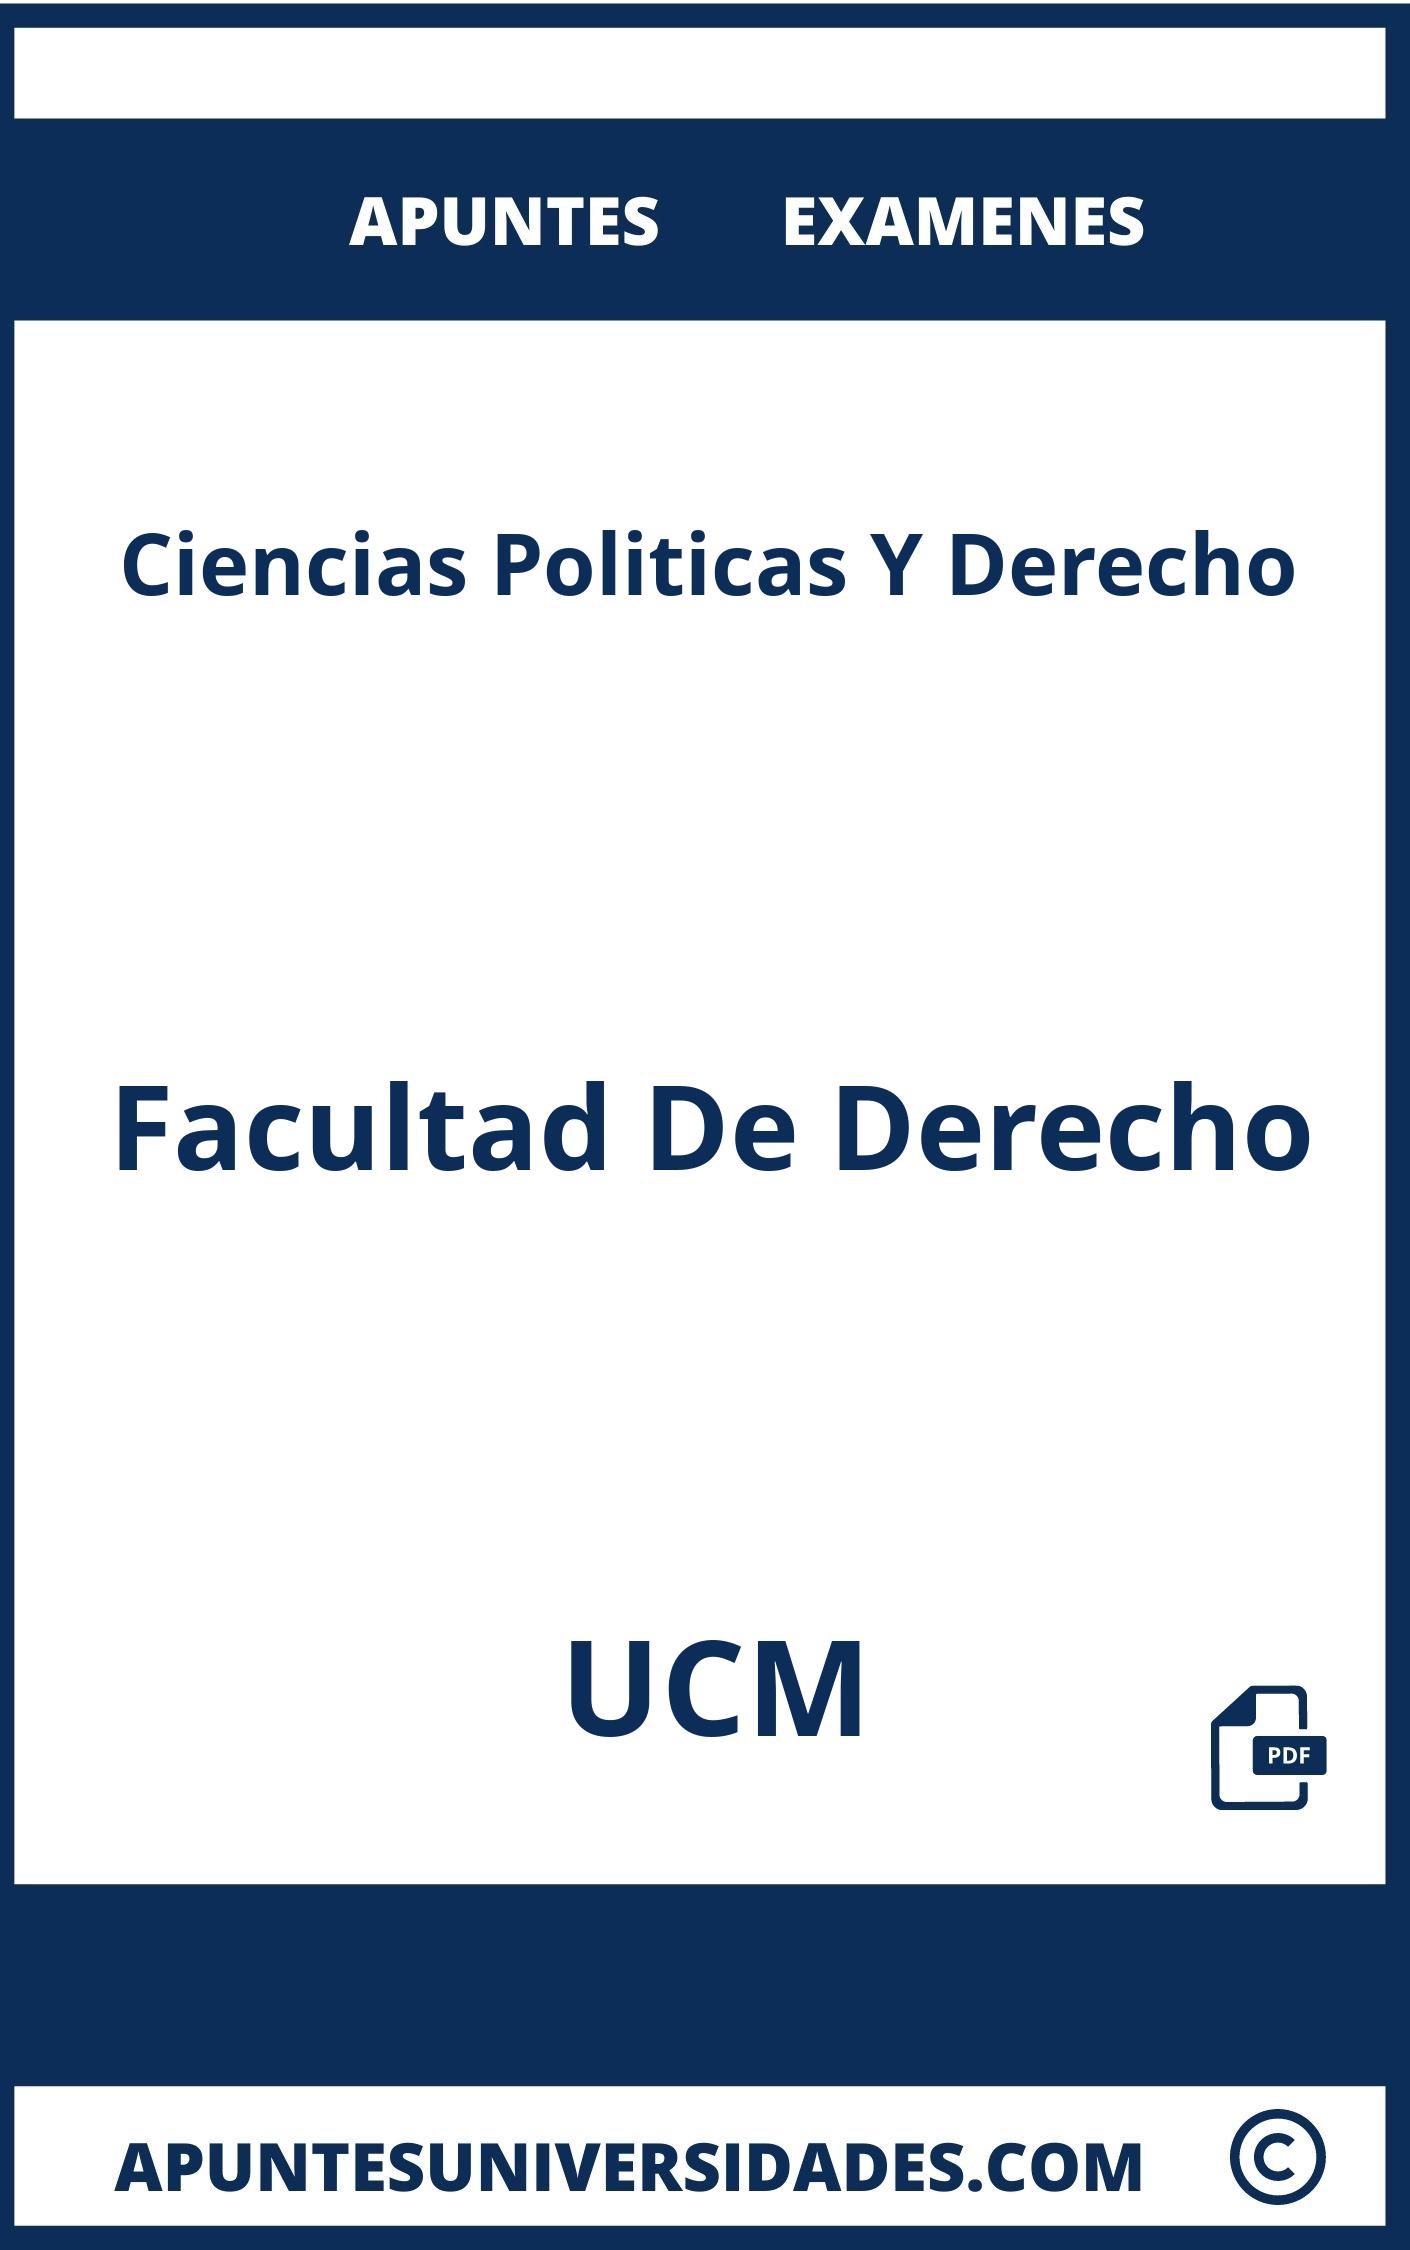 Examenes y Apuntes Ciencias Politicas Y Derecho UCM